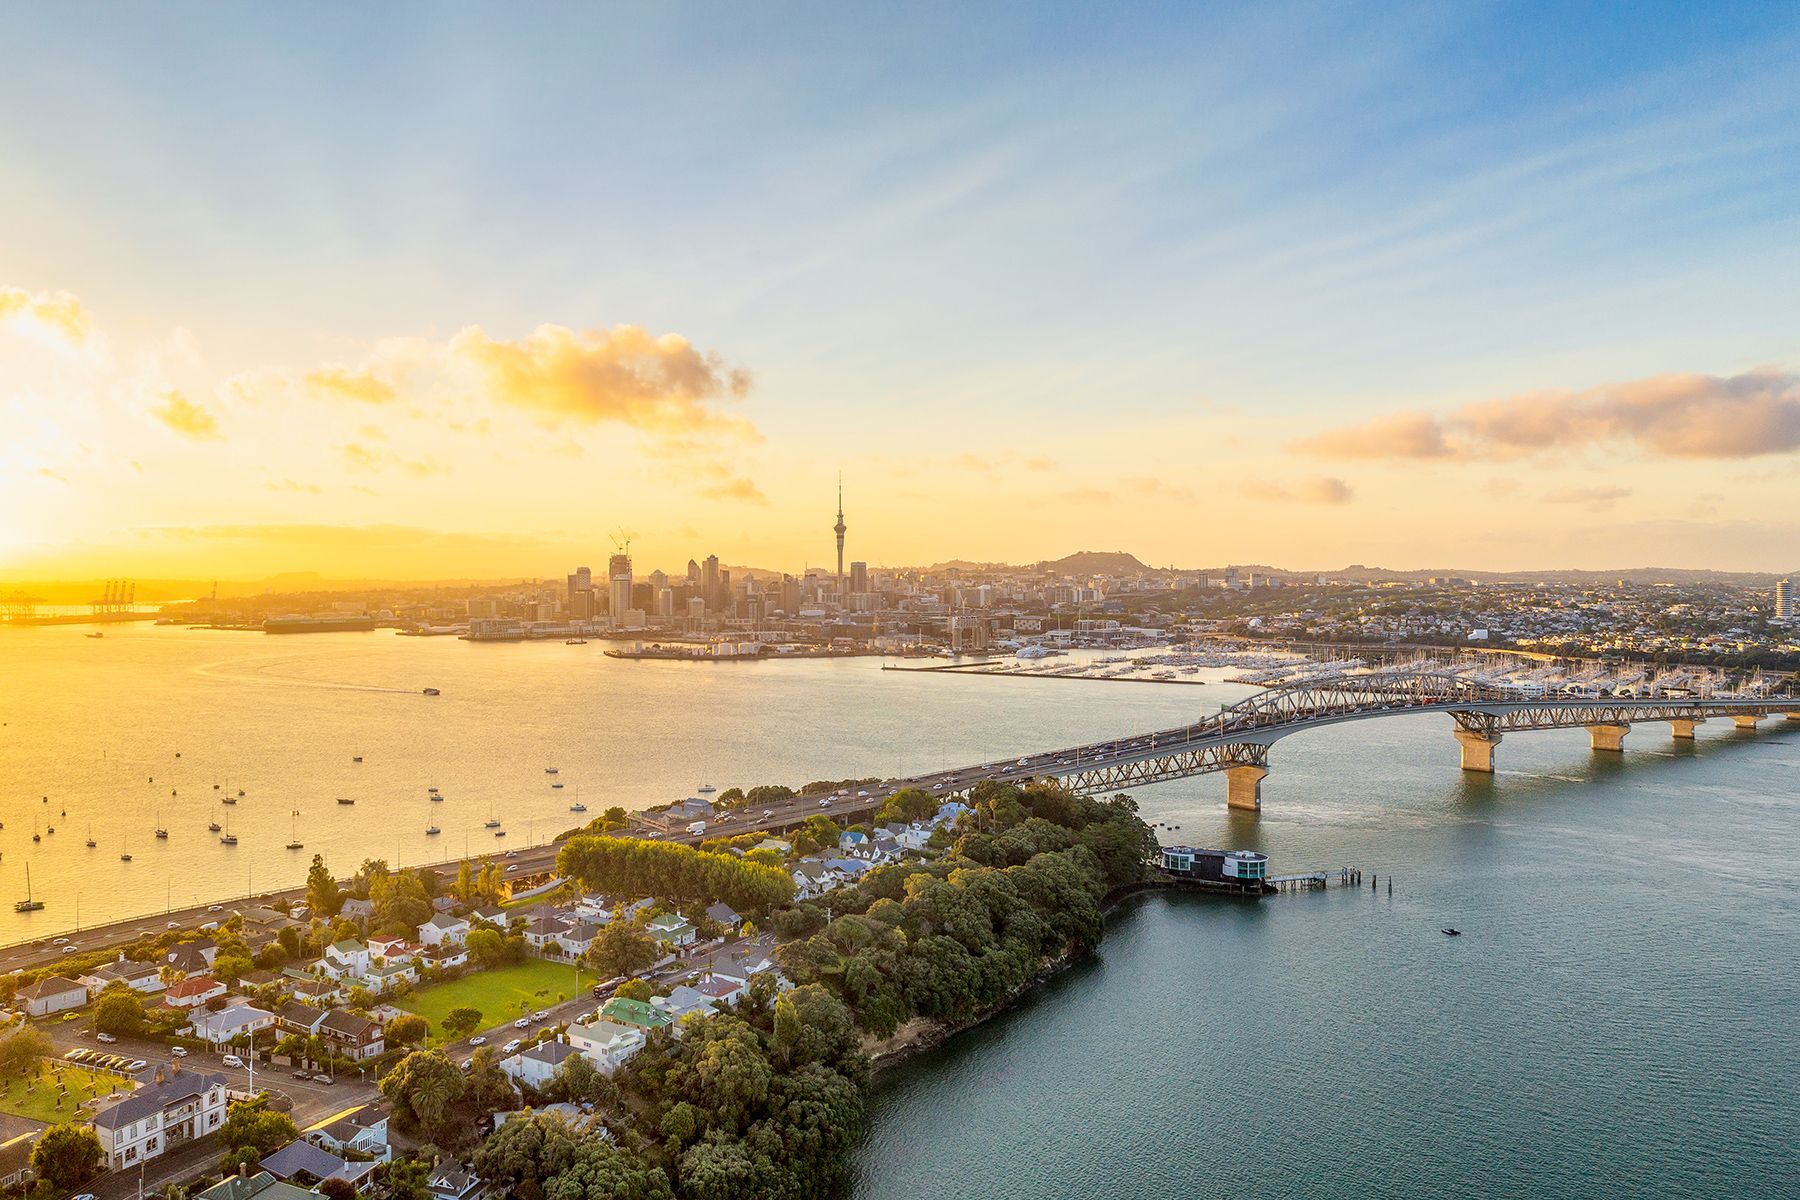 Panoramska slika odozgo Aucklanda, s Sky Towerom i CBD-om vidljivim preko luke Waitemata i lučkog mosta Auckland.